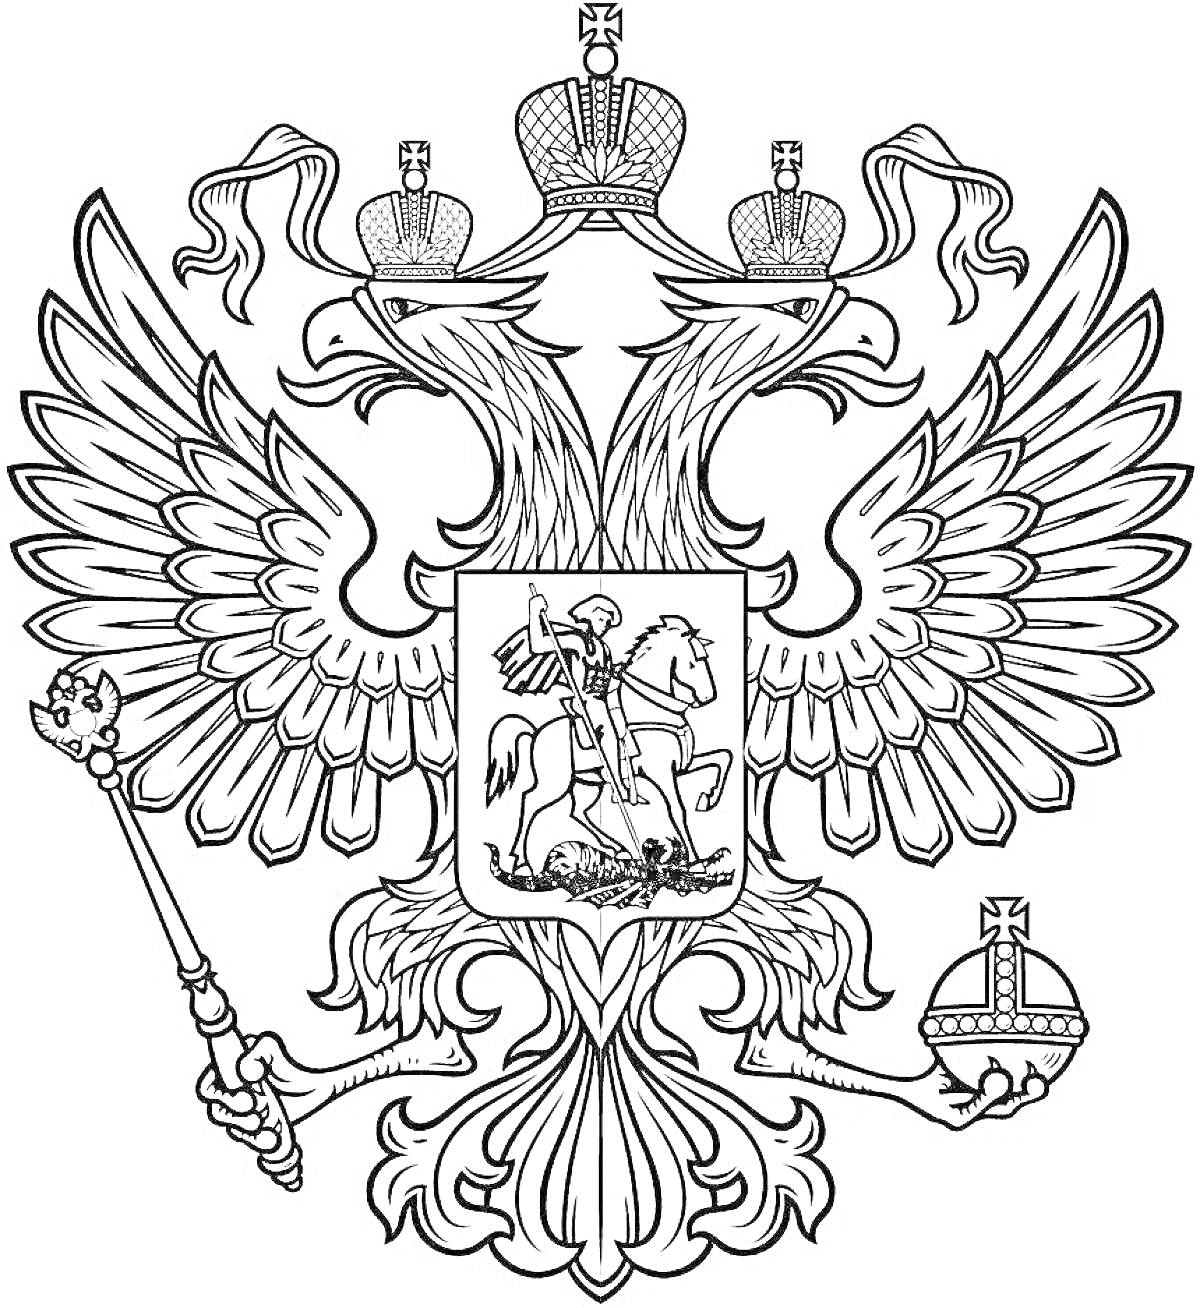 Герб Российской Федерации с двуглавым орлом, скипетром, державой и изображением Георгия Победоносца